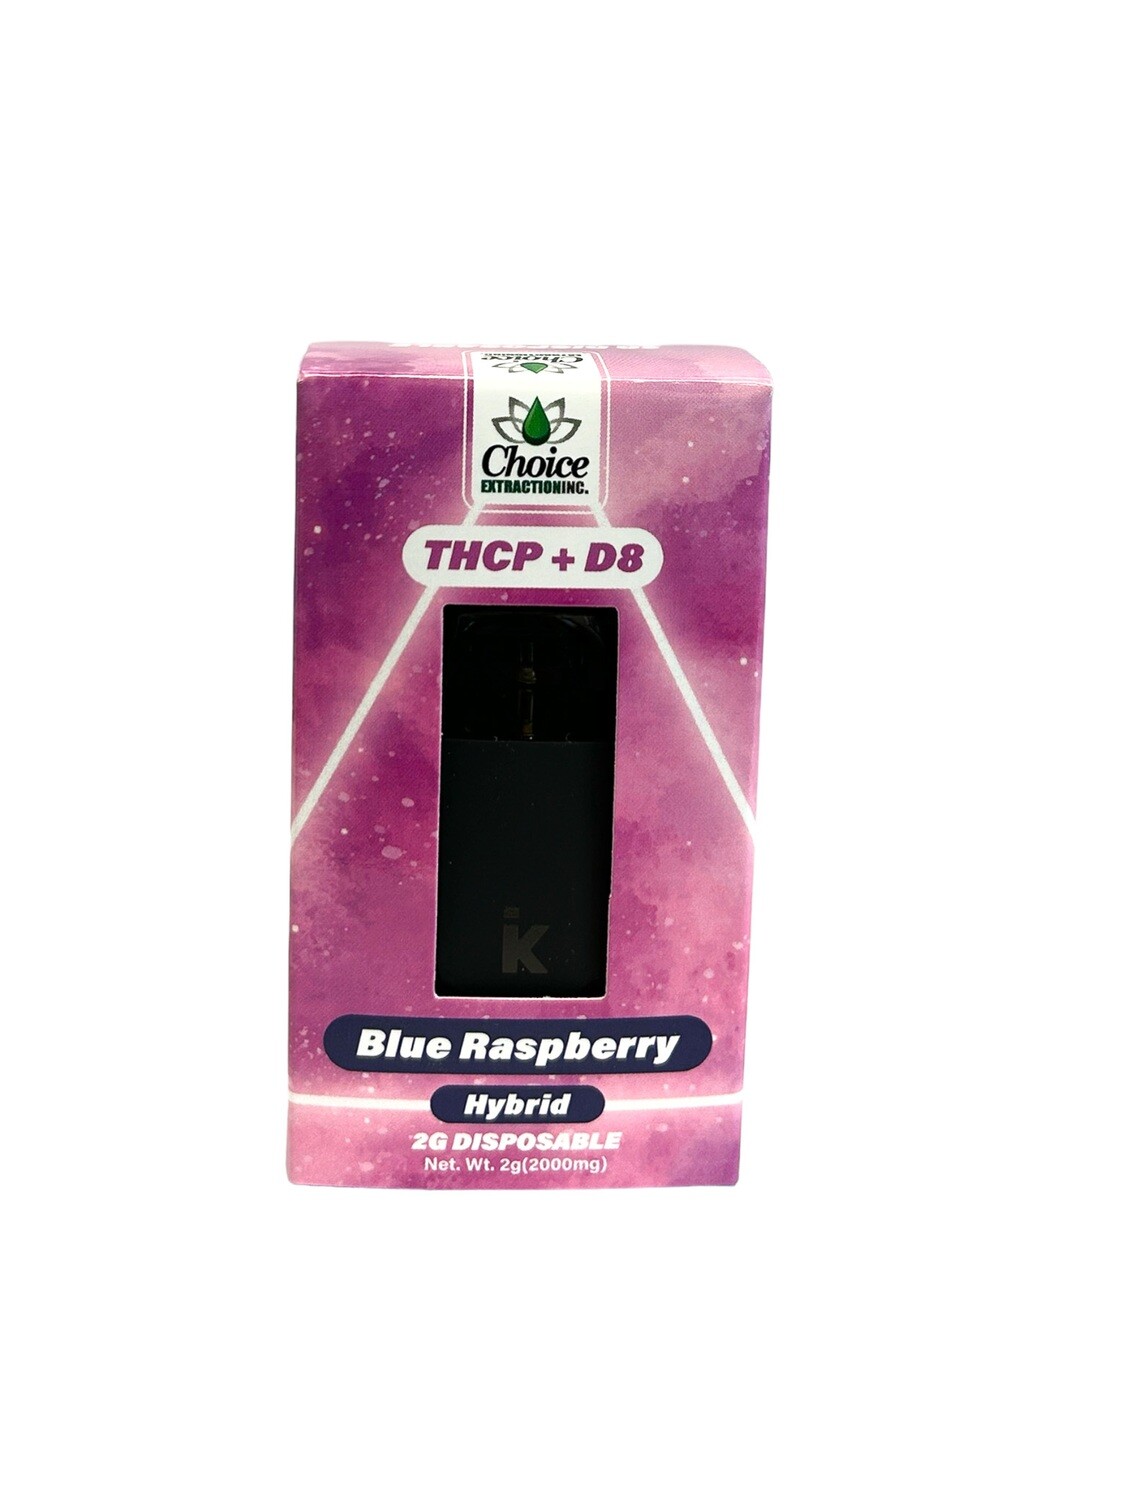 THCP + D8 Disposable - Blue Raspberry 2mL - Hybrid